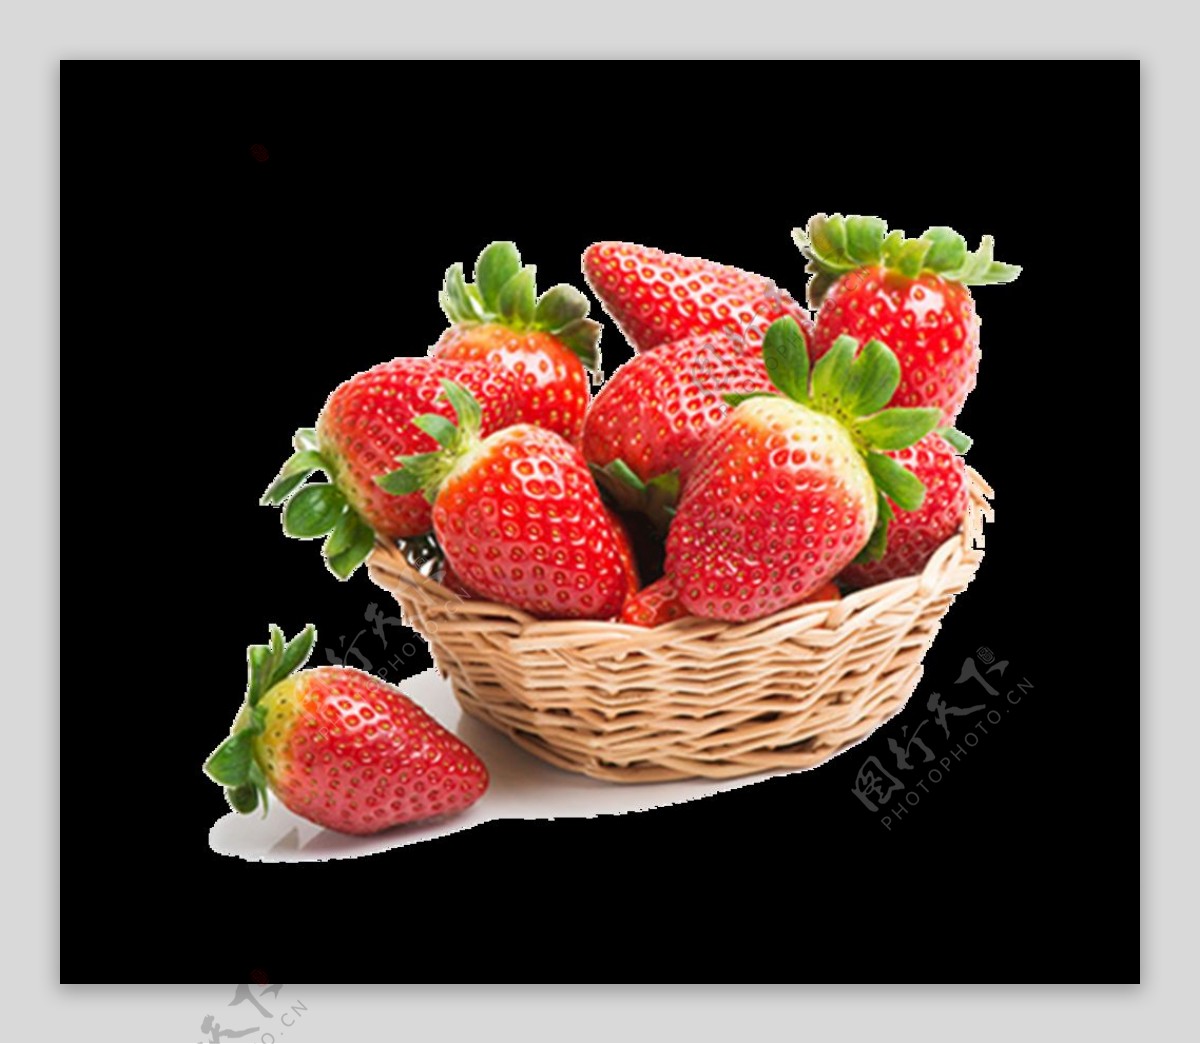 一箩筐草莓